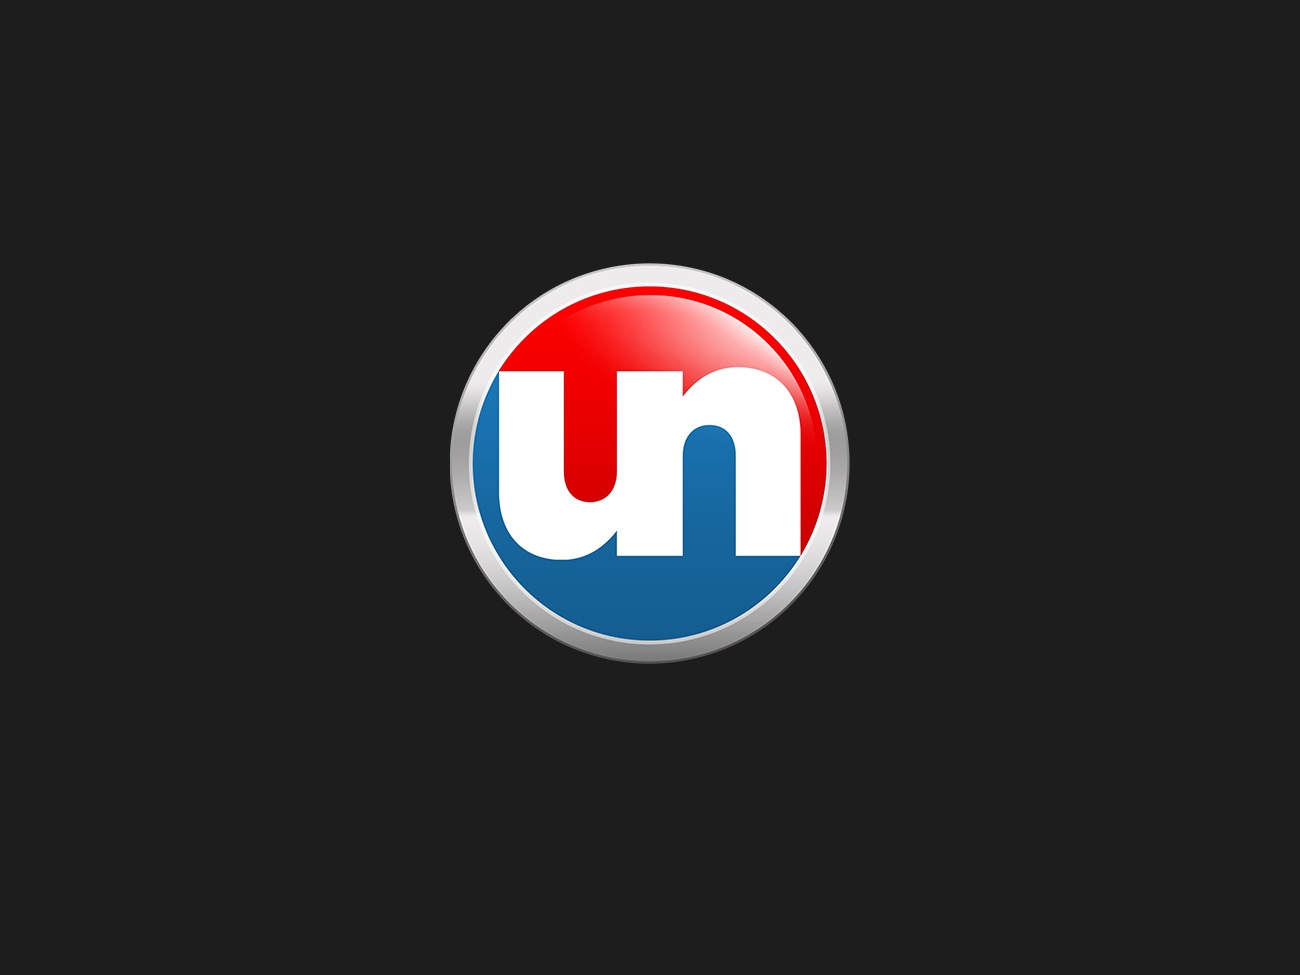 Unpartial.com Branding and Logo Design